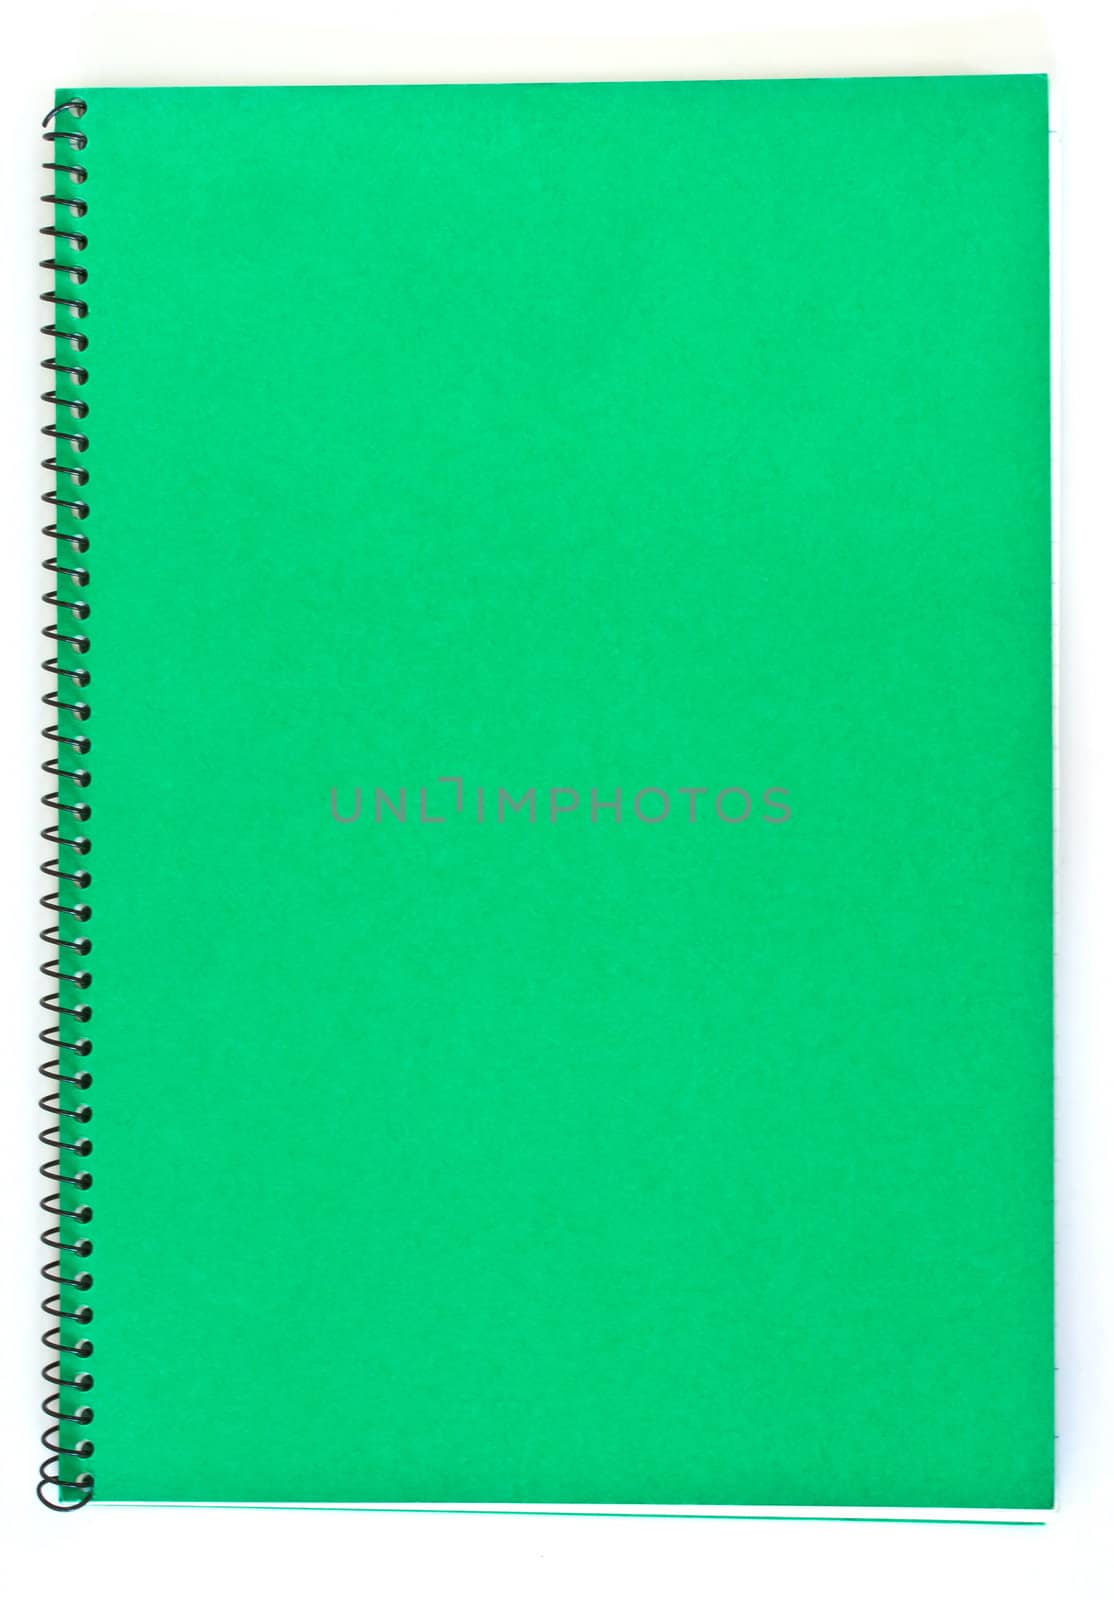 Spiral Green Notebook on White Backround